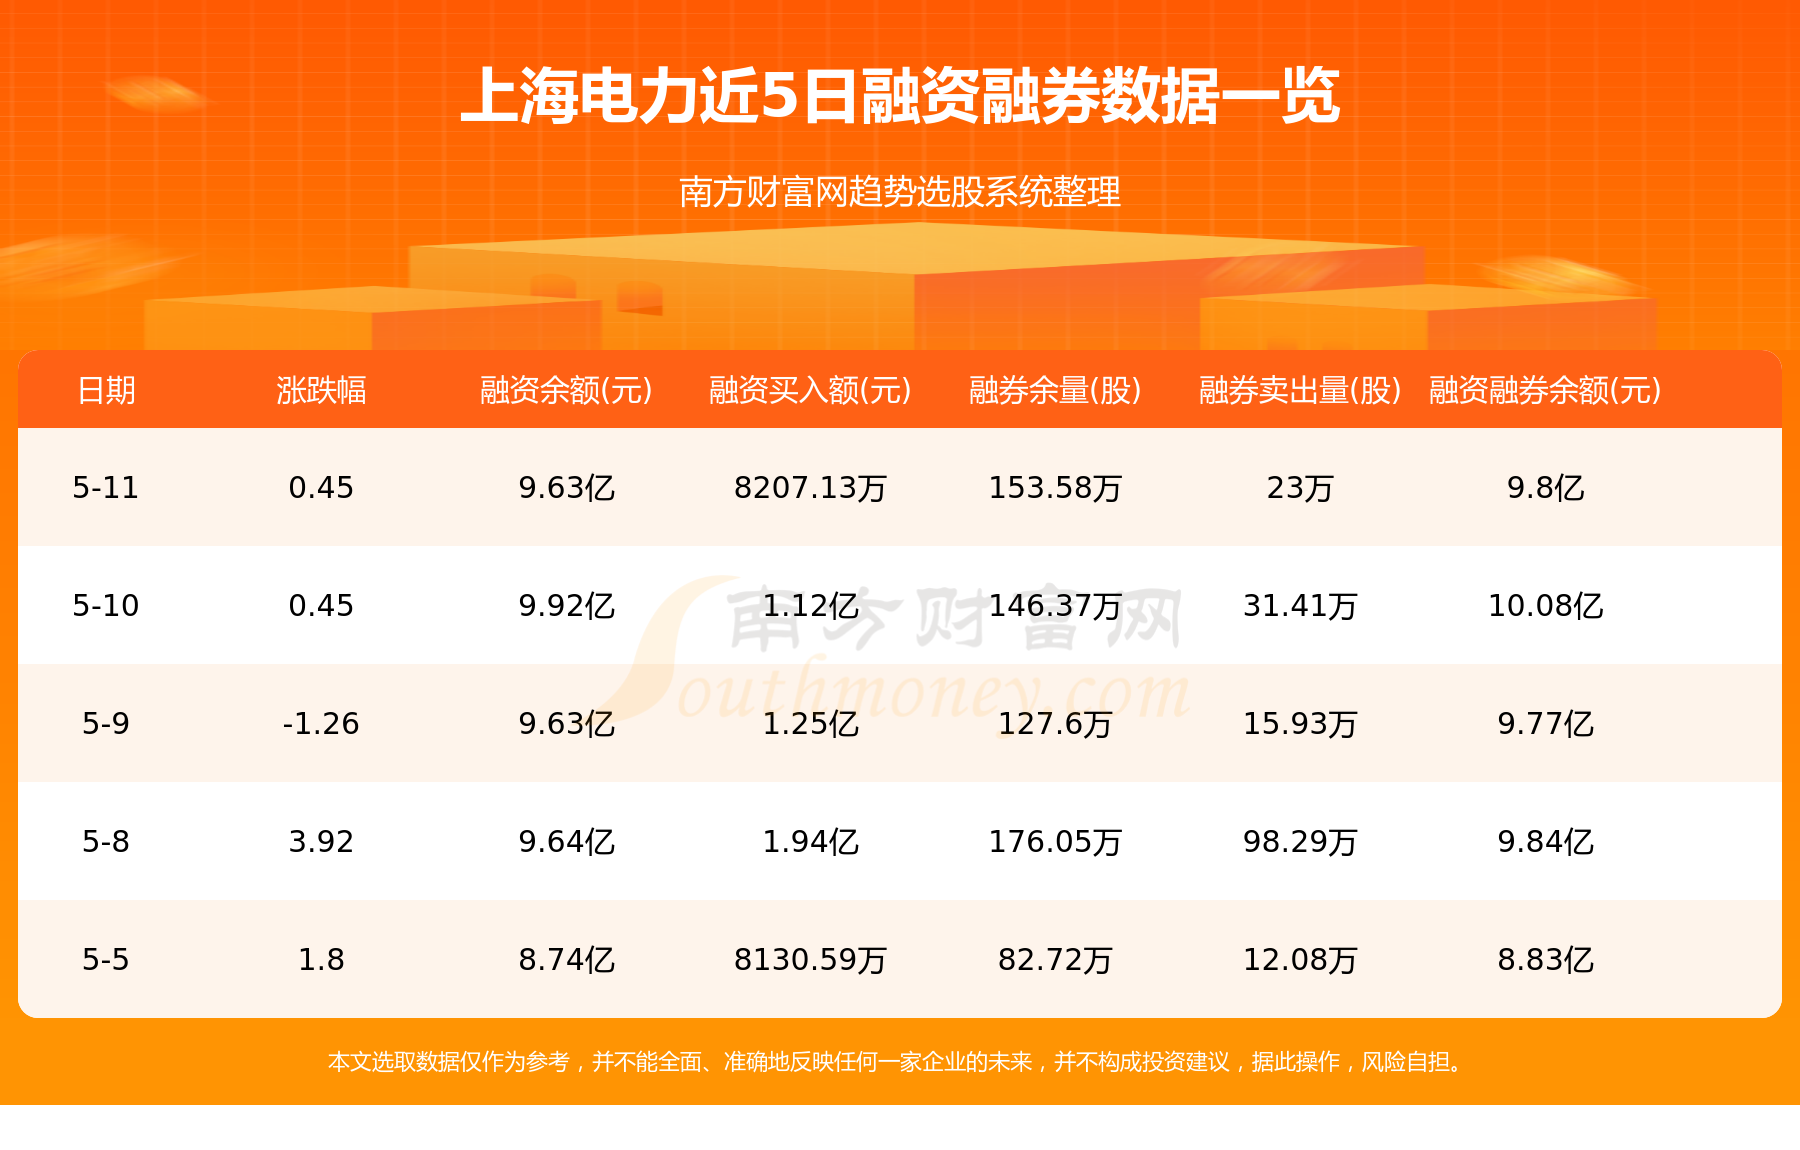 【5月12日资金流向】上海电力资金流向一览表